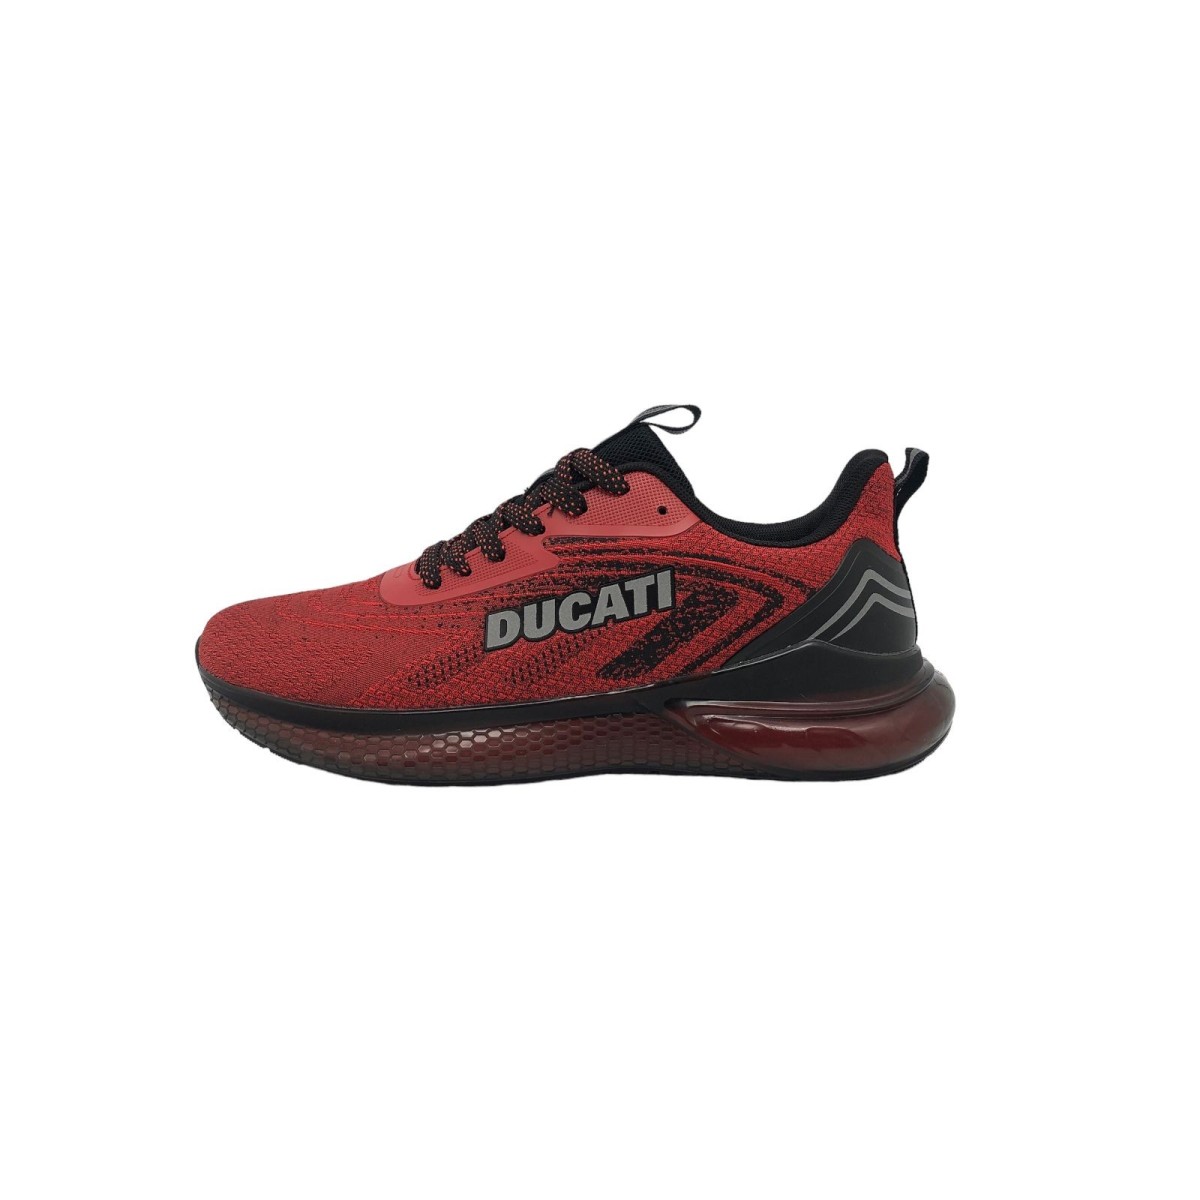 Chaussures de sport homme Road Runner Ducati DU23M106 GB01 rouge noir